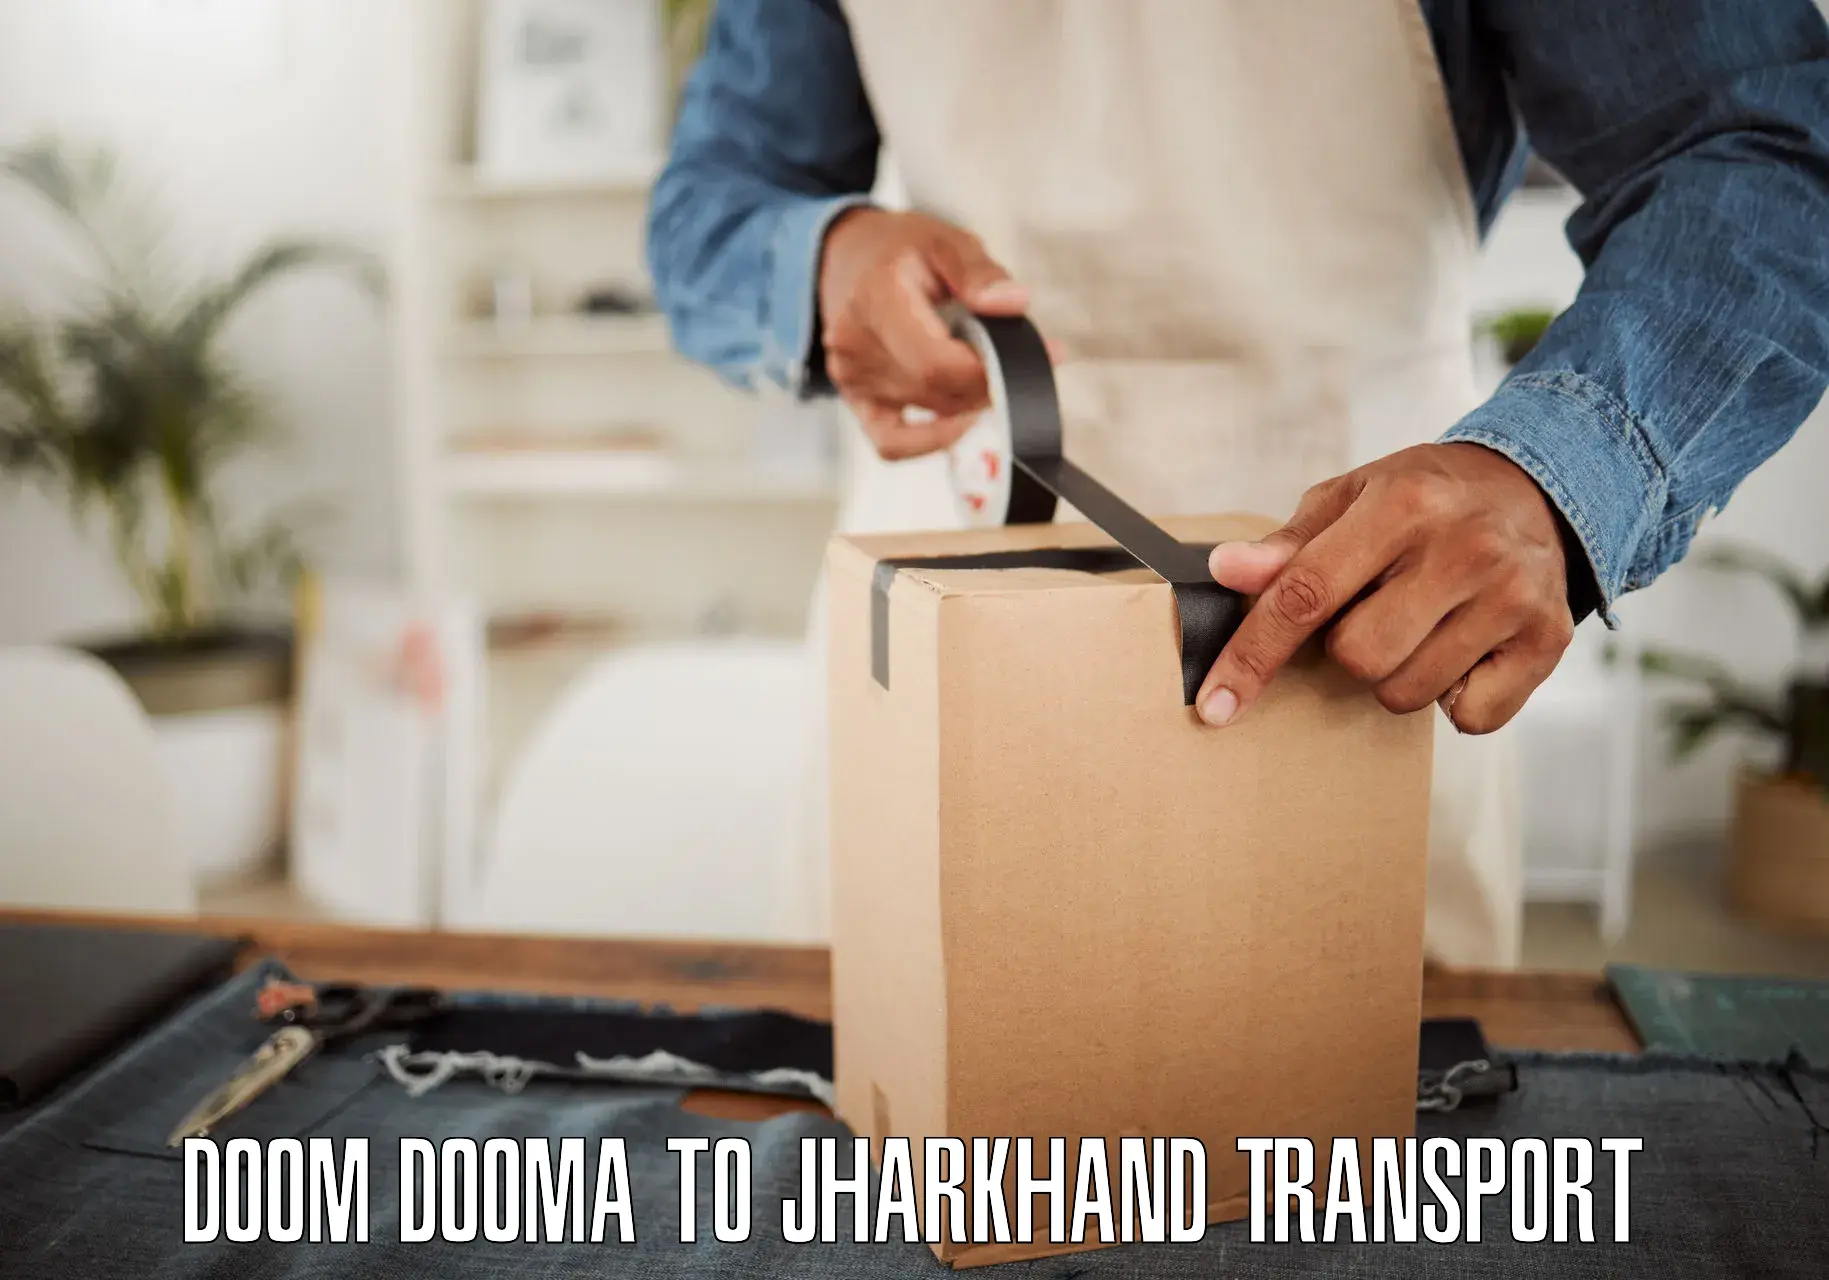 Furniture transport service Doom Dooma to Lohardaga